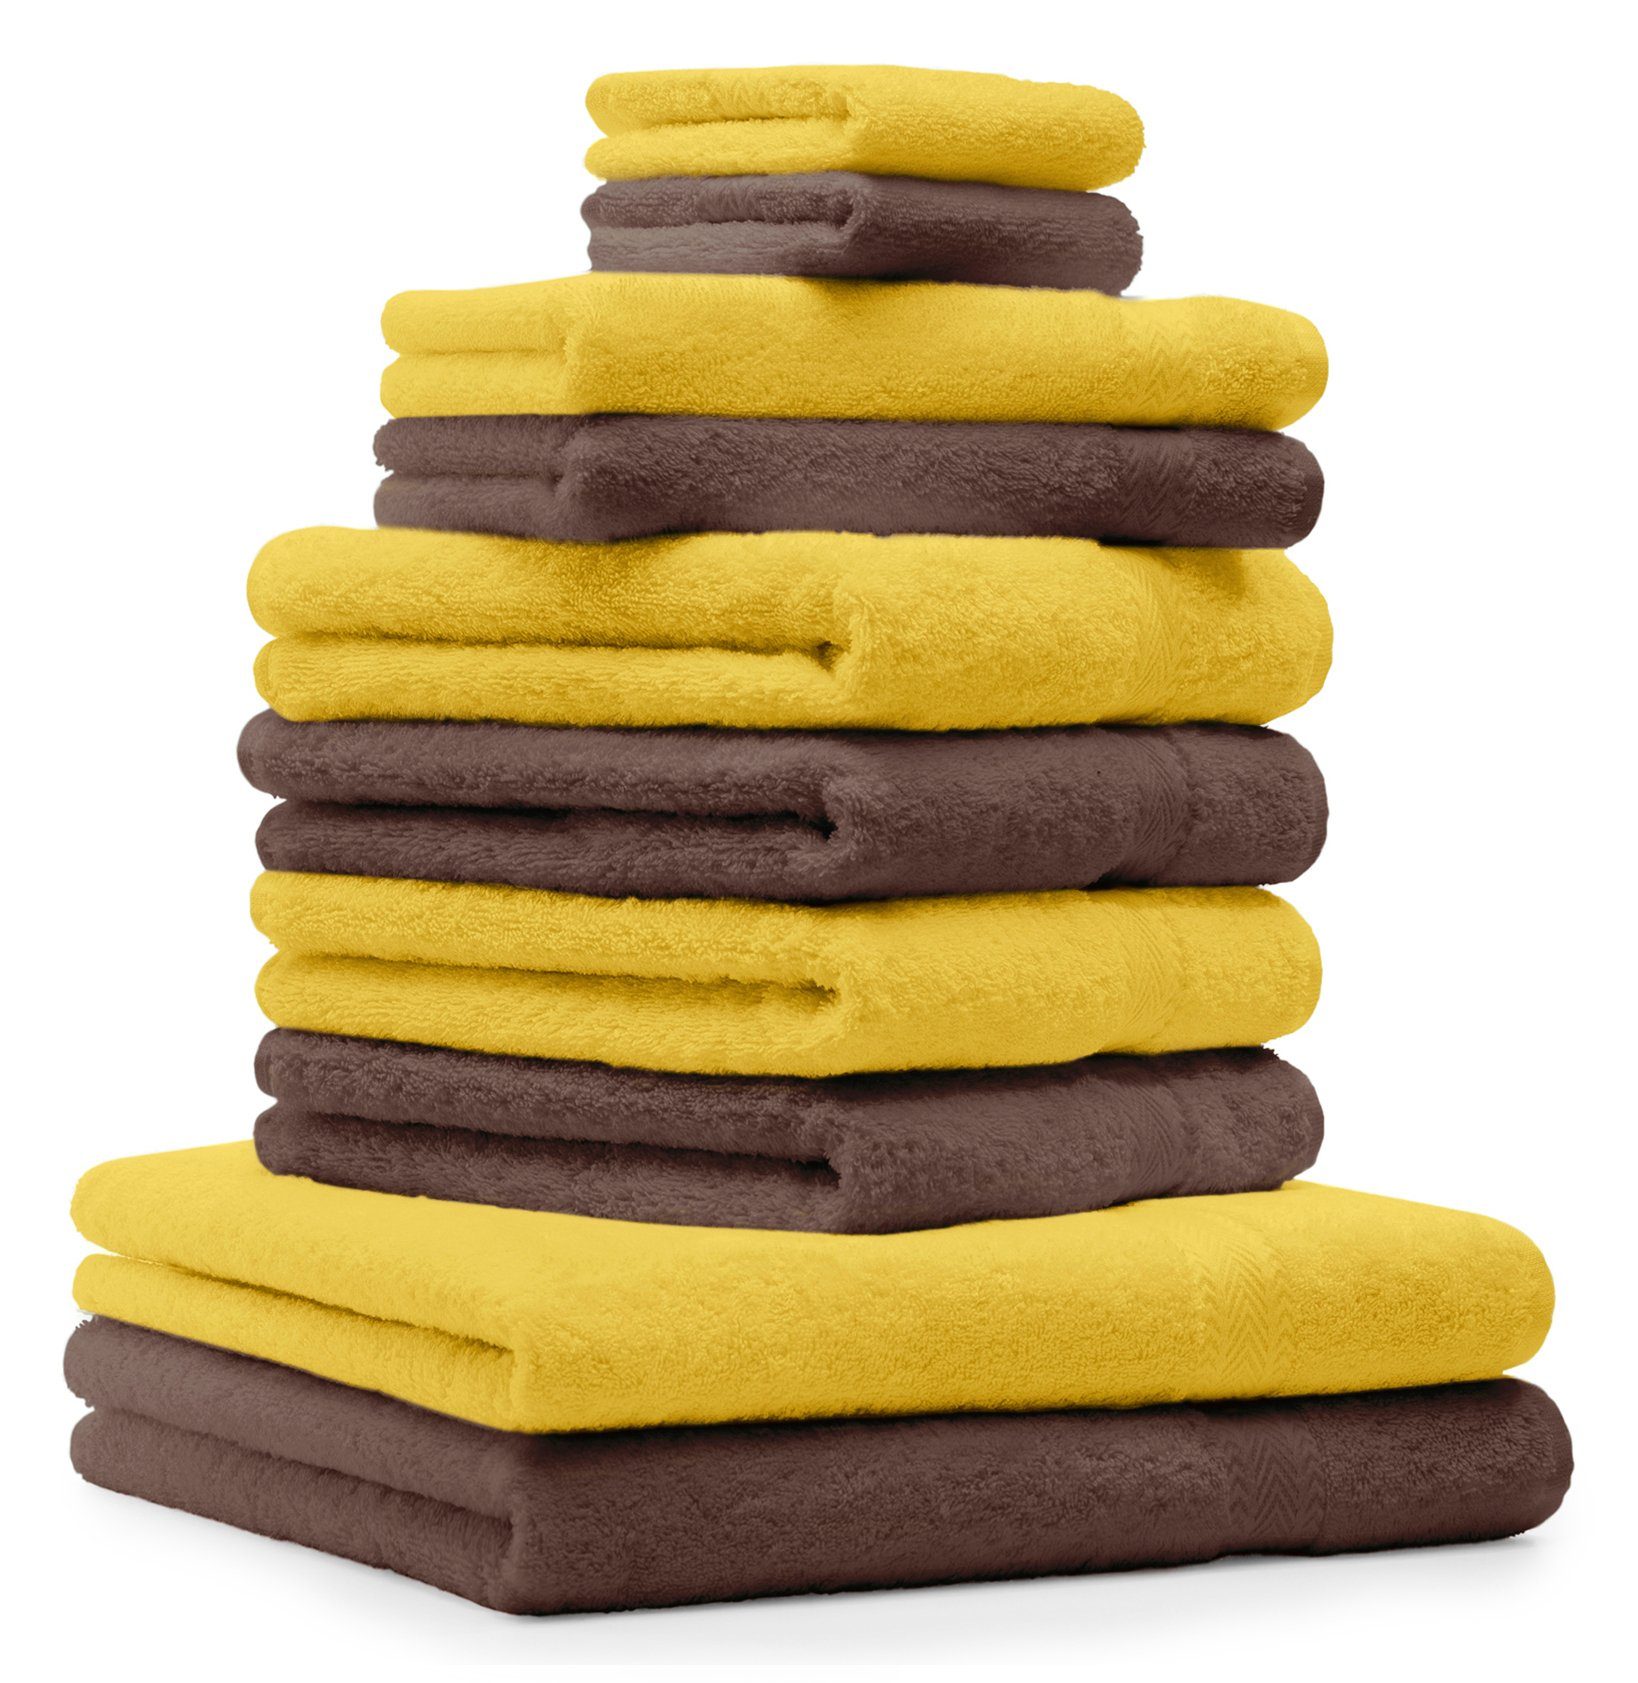 Betz Handtuch Set 10-TLG. Handtuch-Set Classic 100% Baumwolle gelb & nussbraun, 100% Baumwolle